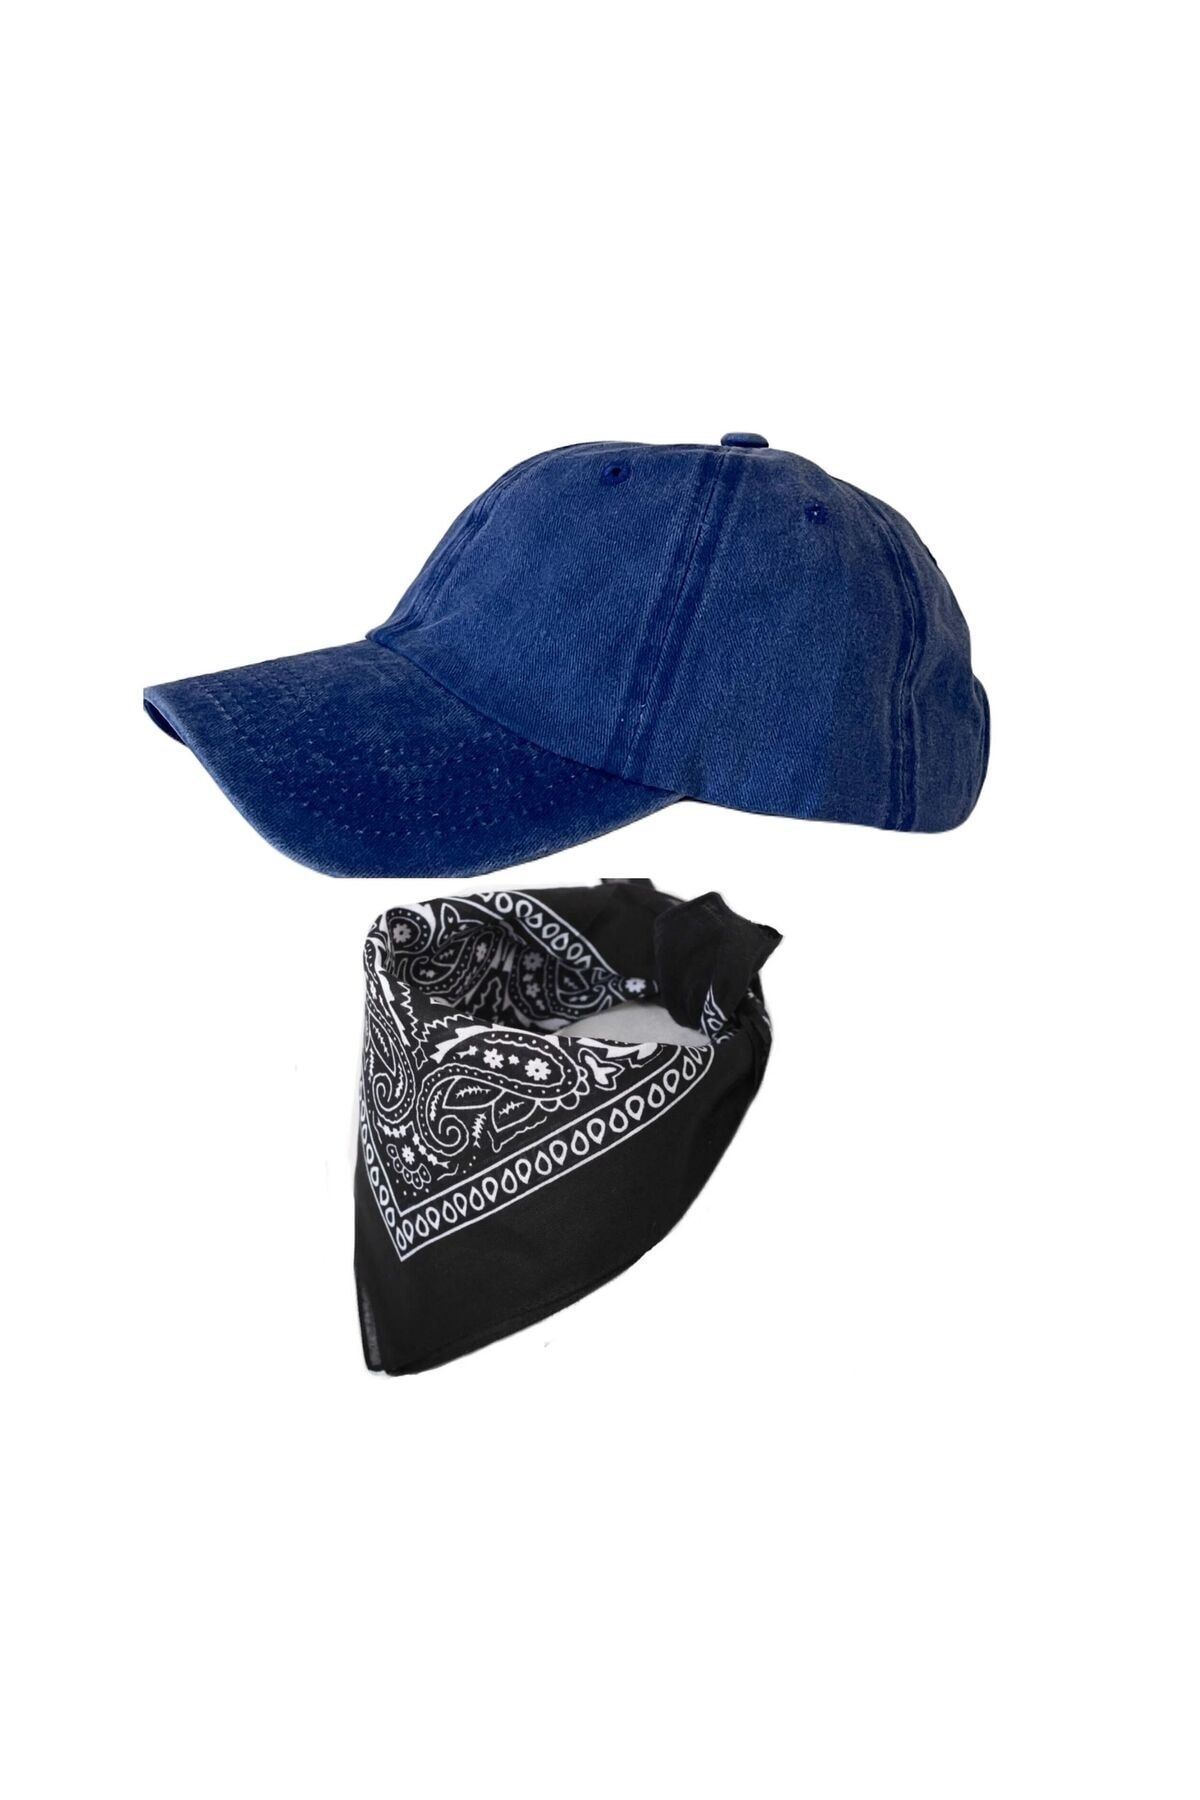 Rupen Kraft Yeni Sezon Bandana KombinliDüz Mavi Renk Yıkamalı Eskitme Şapka Vintage Şapka